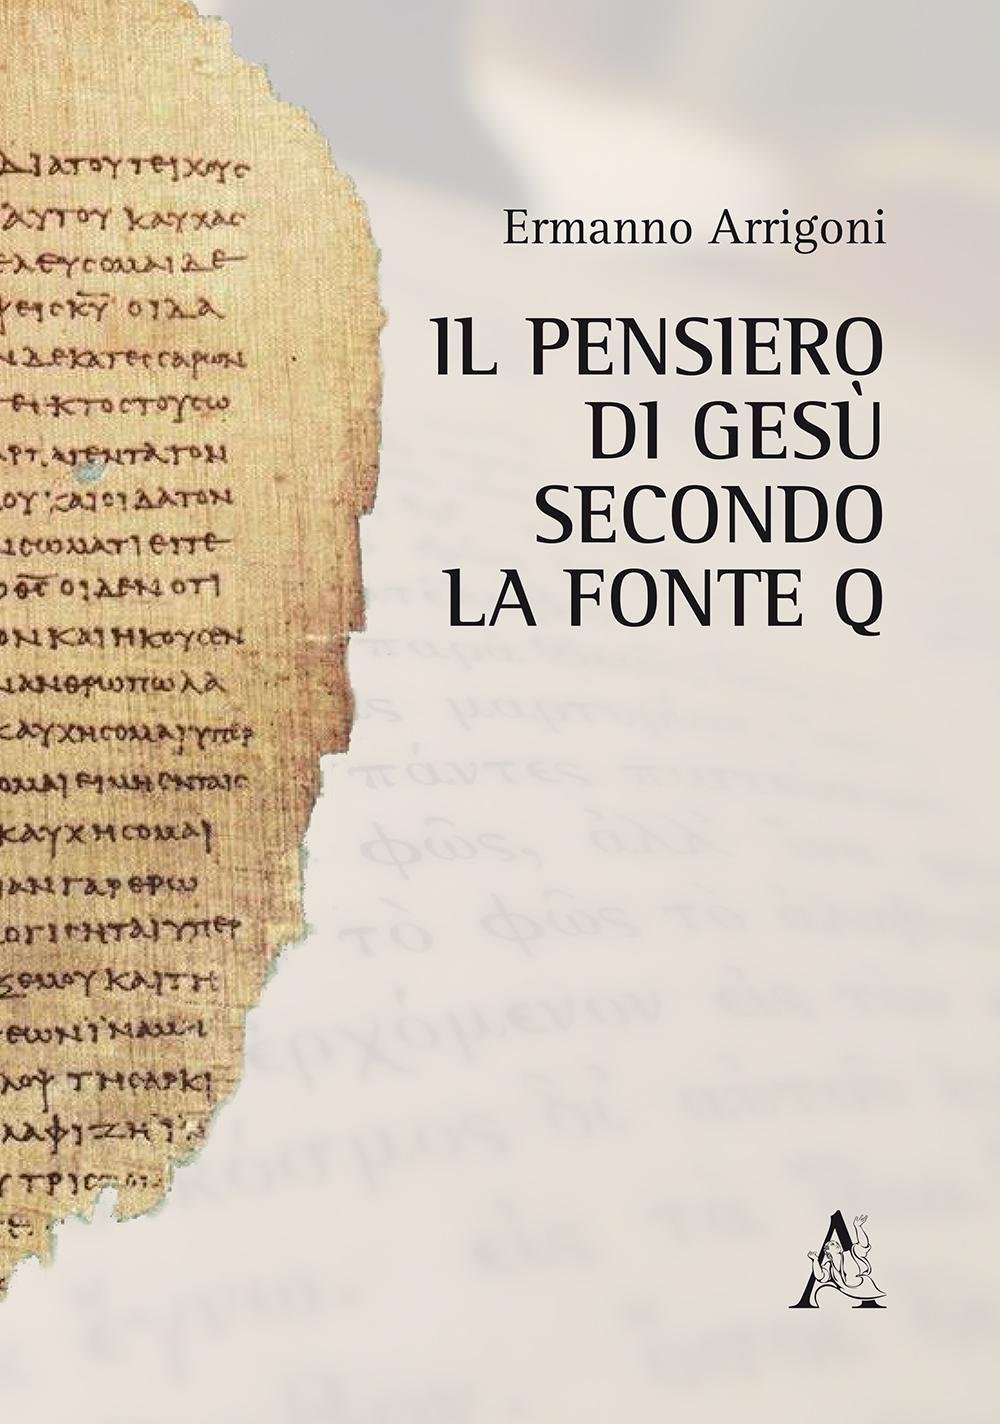 Ermanno Arrigoni: Il pensiero di Gesù secondo la fonte Q (Italian language, 2016, Aracne editrice int.le S.r.l.)